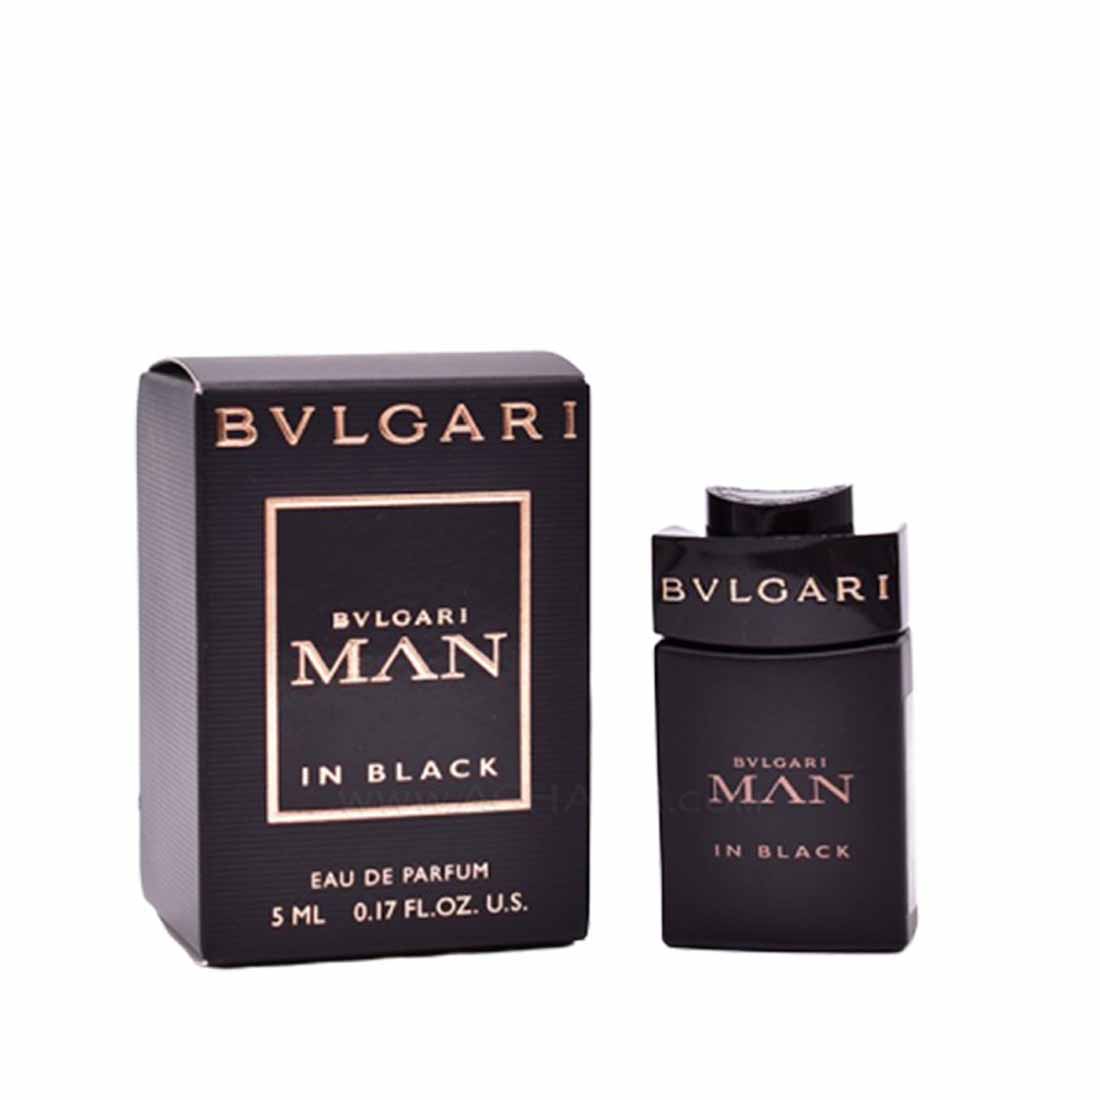 Bvlgari Man in Black EDP Miniature For Men-5ml